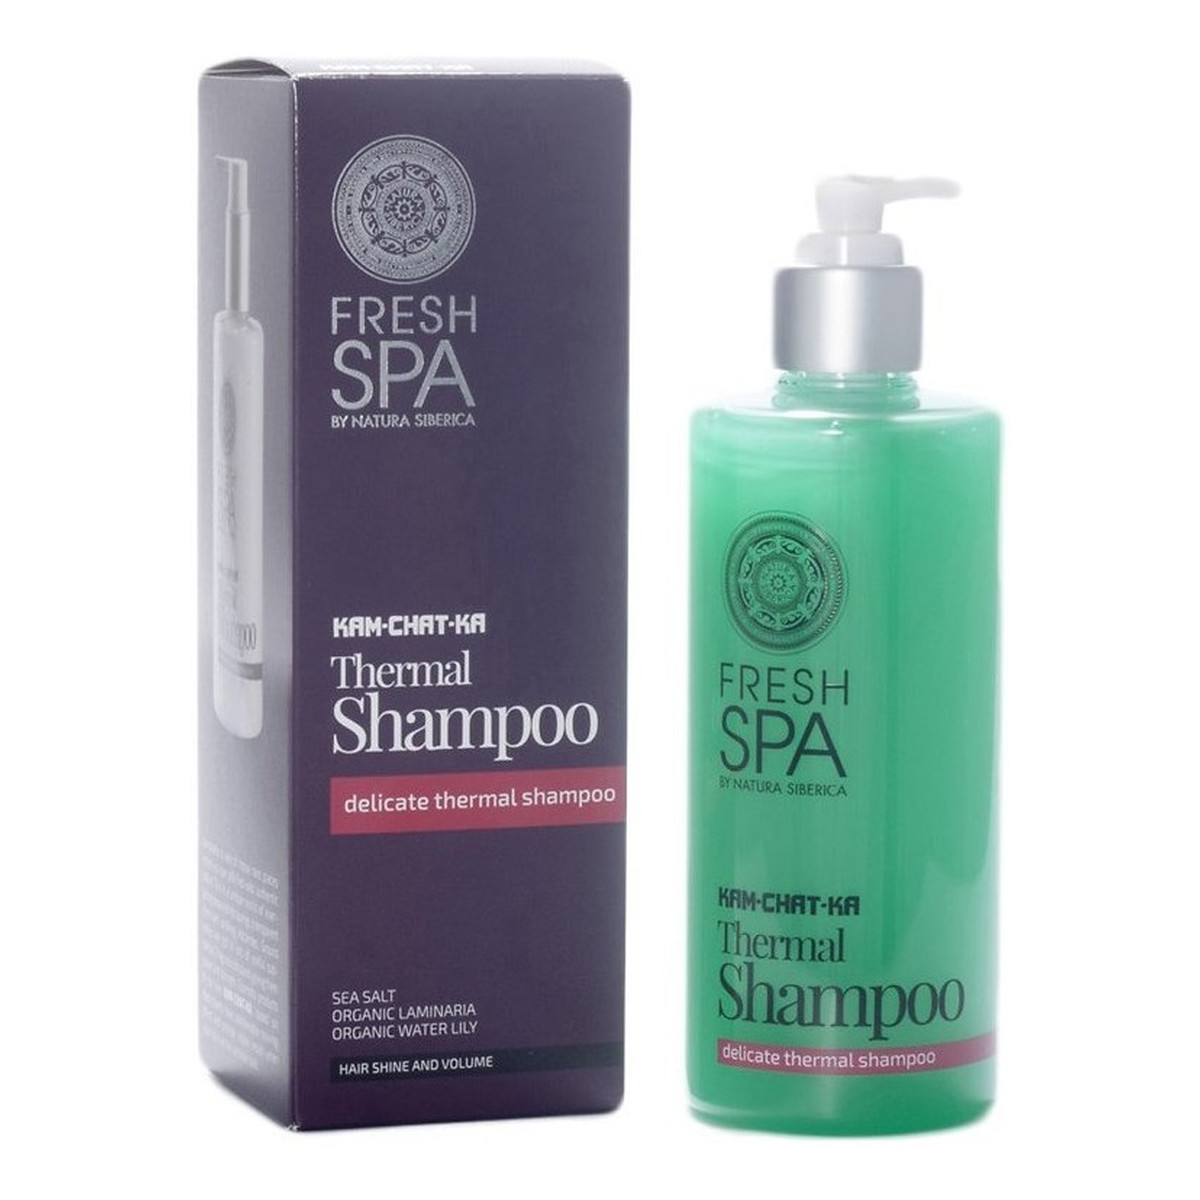 Natura Siberica Fresh Spa Thermal Shampoo Delikatny szampon termalny do włosów 300ml